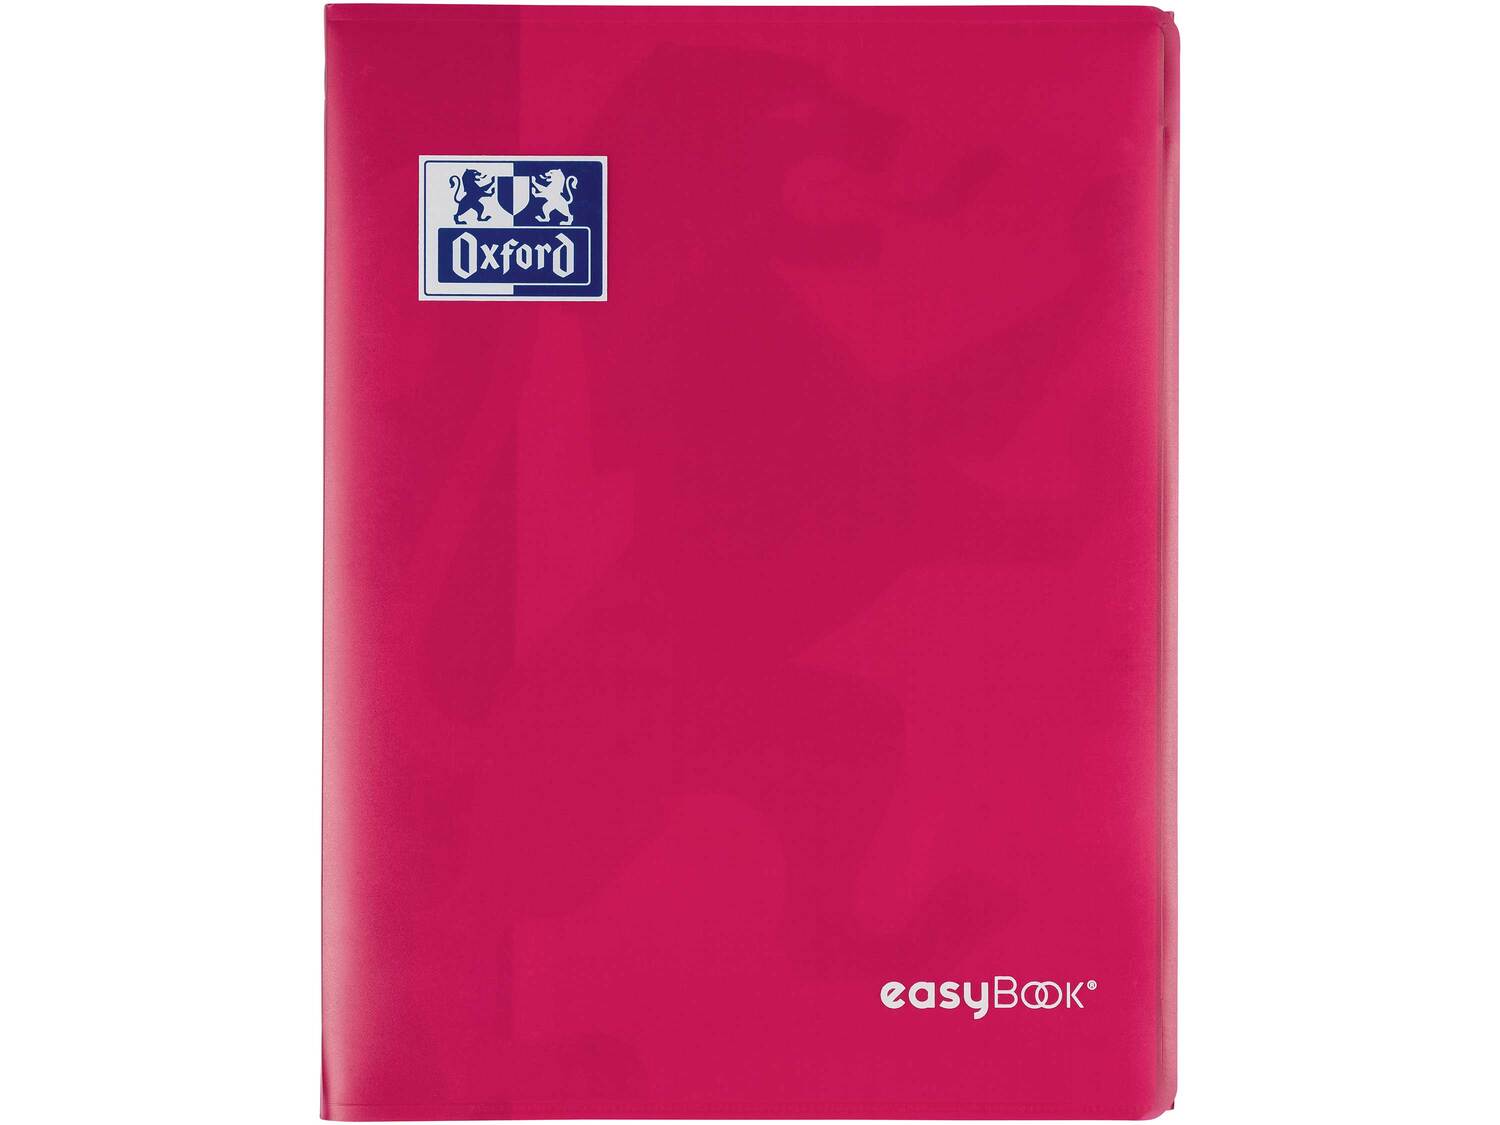 Cahier Easybook , le prix 2.49 &#8364;  
-  24 x 32 cm
-  96 pages